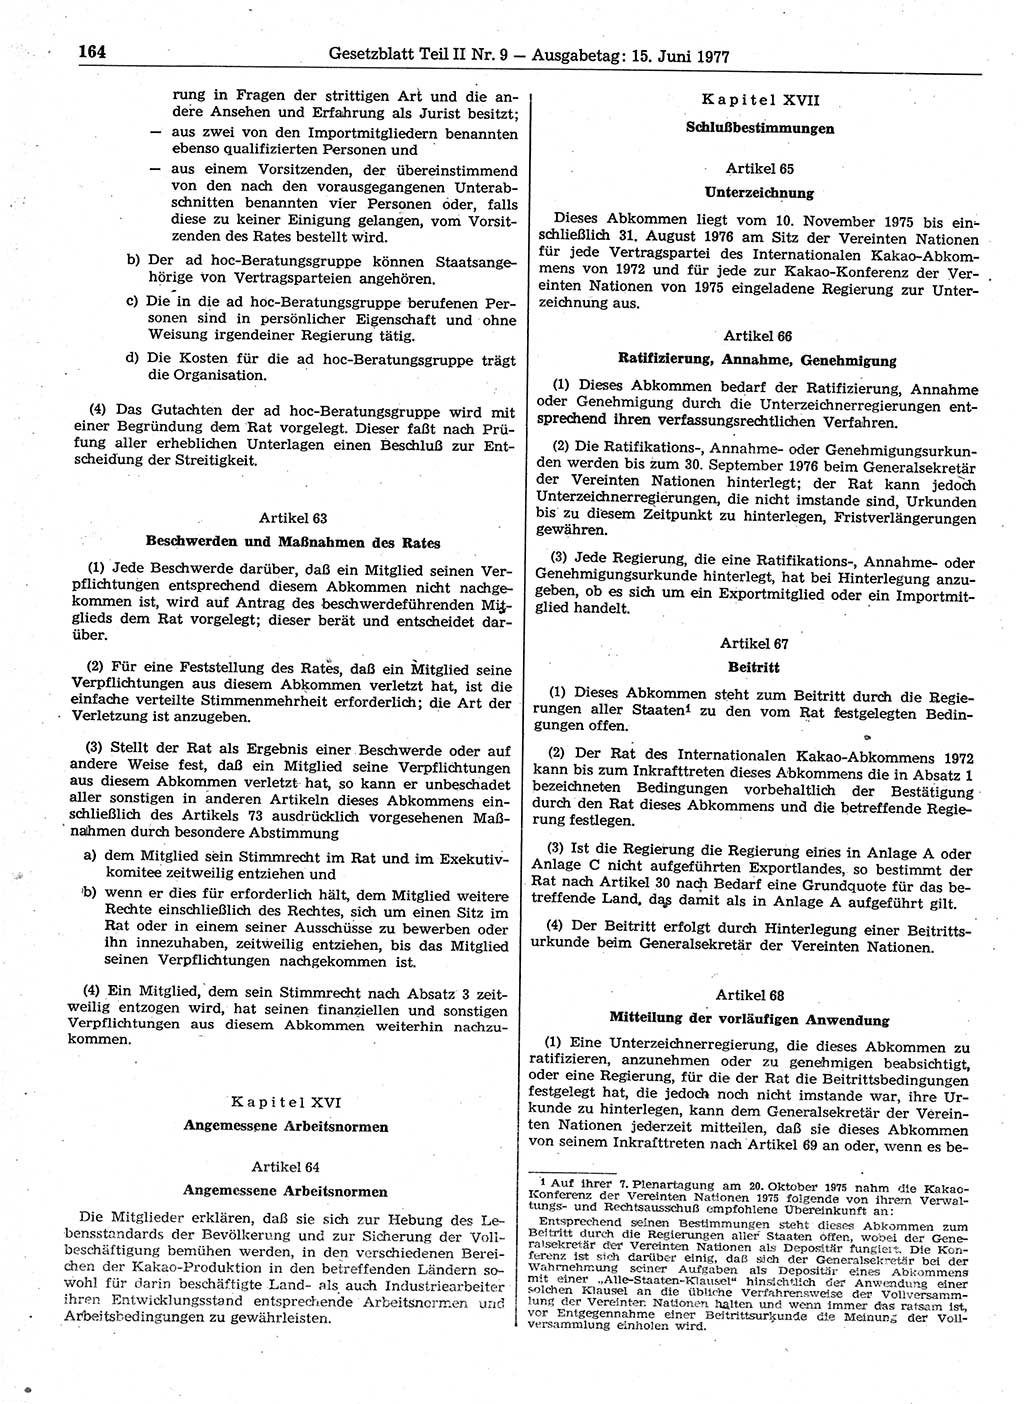 Gesetzblatt (GBl.) der Deutschen Demokratischen Republik (DDR) Teil ⅠⅠ 1977, Seite 164 (GBl. DDR ⅠⅠ 1977, S. 164)